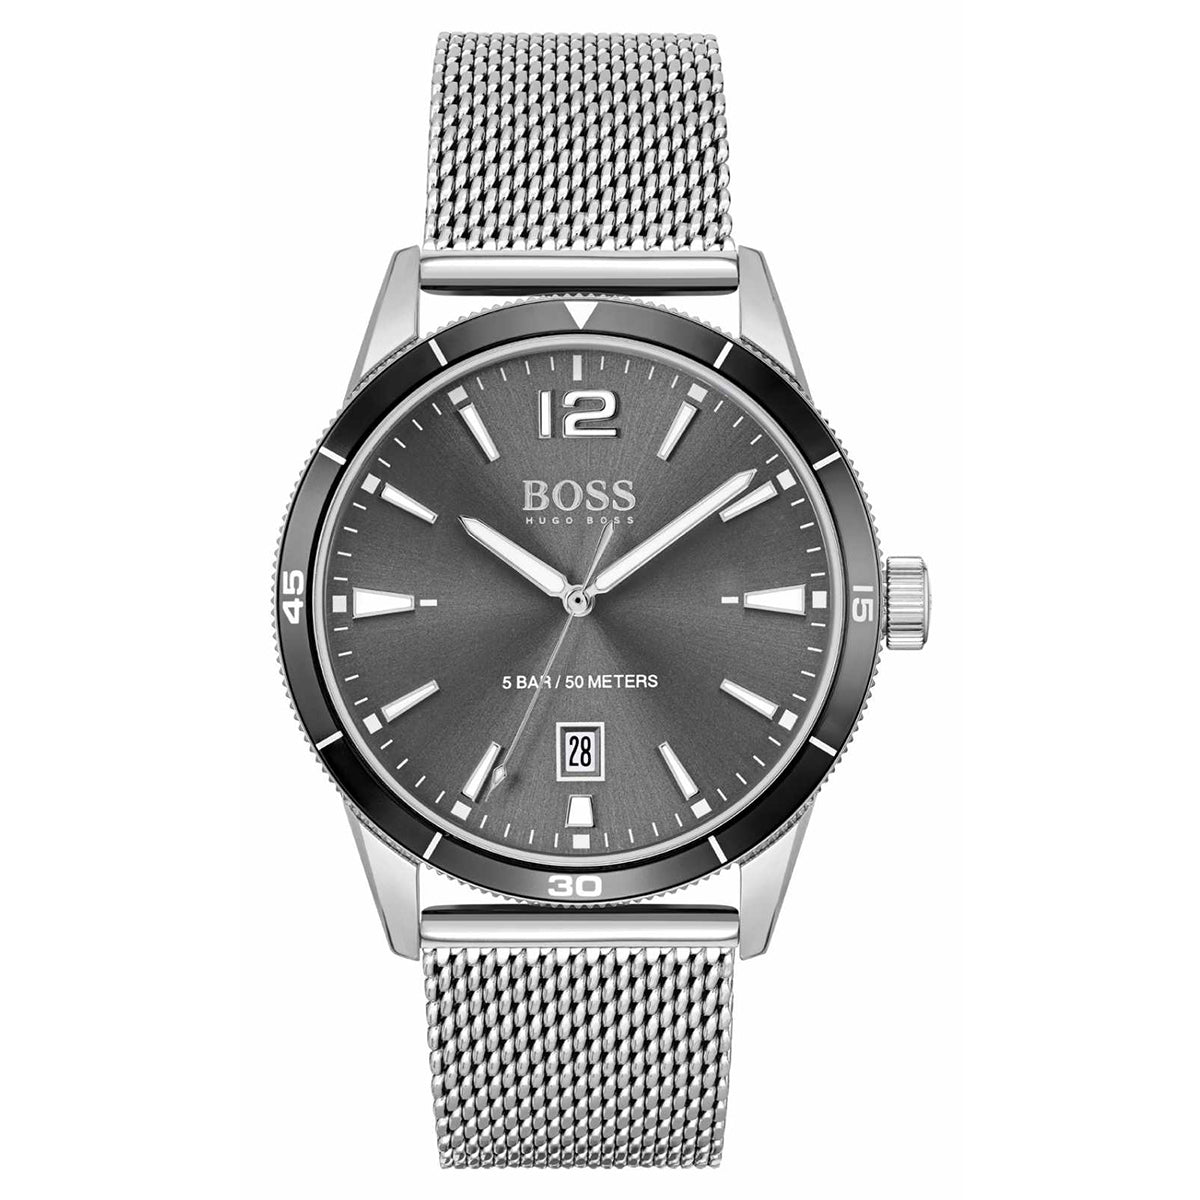 lav lektier du er Demonstrere Hugo Boss - Watch and Cufflinks Gift Set - HB157.0126 - egywatch.com